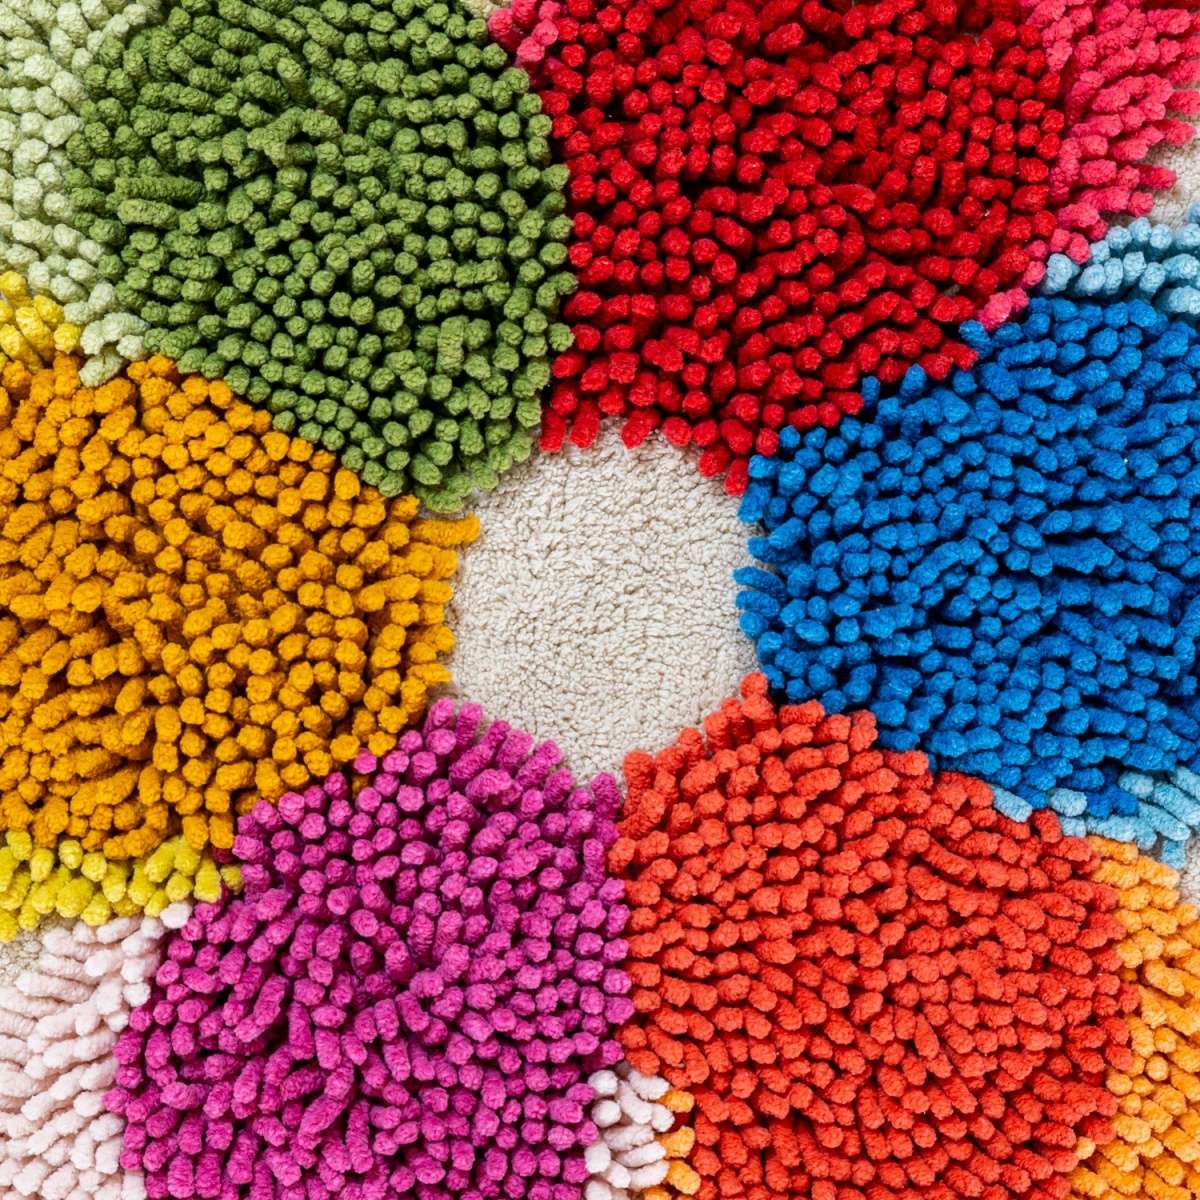 Immagine del prodotto Tappeto Bagno Fiore in Ciniglia di Puro Cotone con Base Antiscivolo | Pietro Zanetti Home